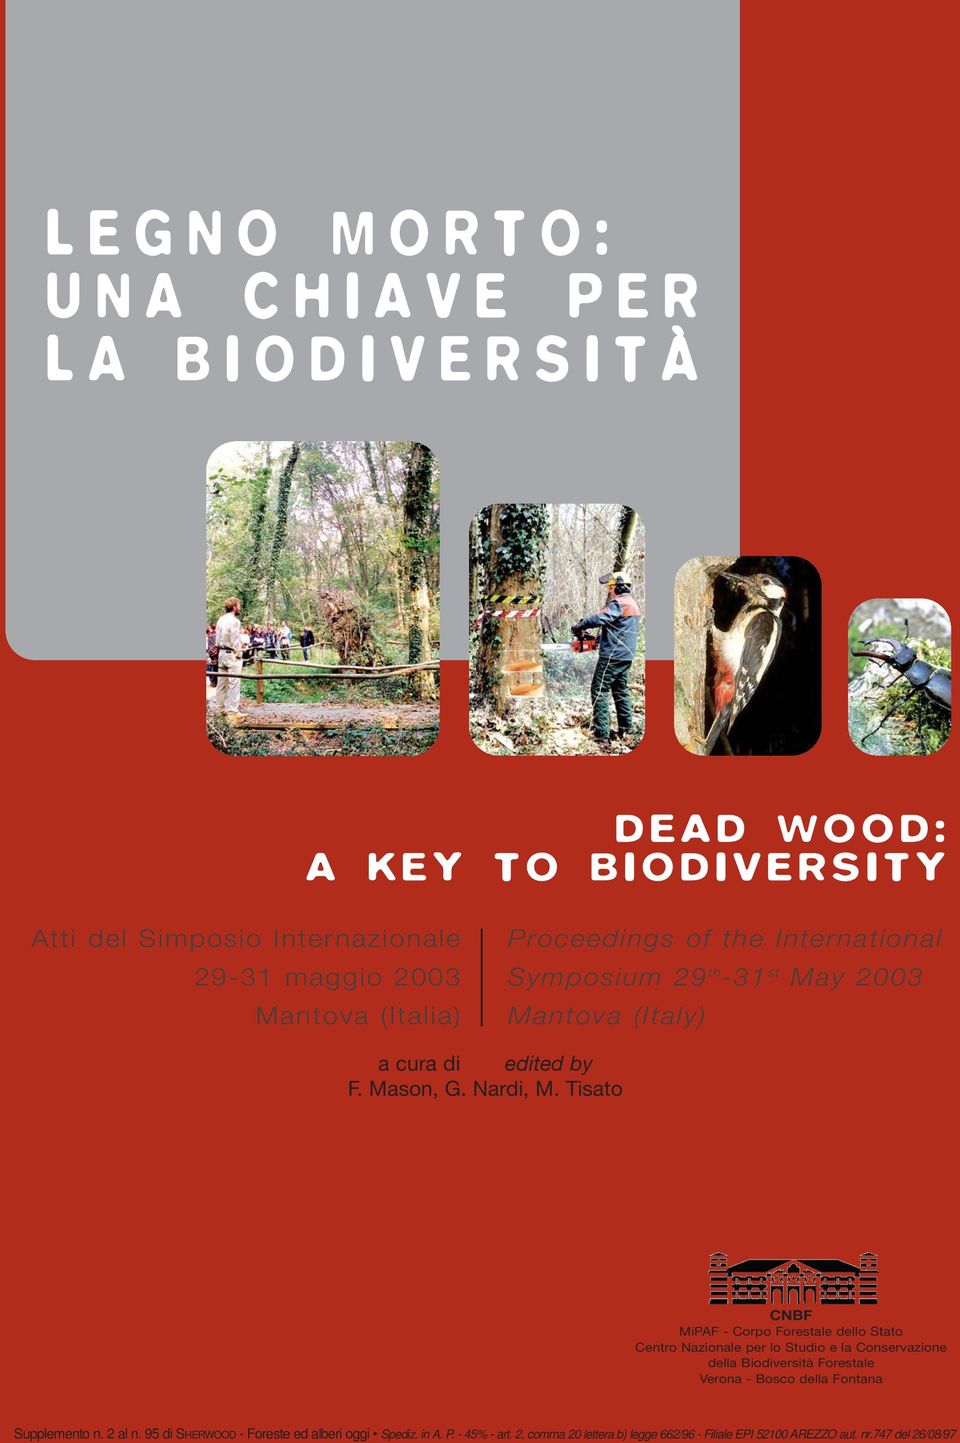 Tisato CNBF MiPAF - Corpo Forestale dello Stato Centro Nazionale per lo Studio e la Conservazione della Biodiversità Forestale Verona - Bosco della Fontana